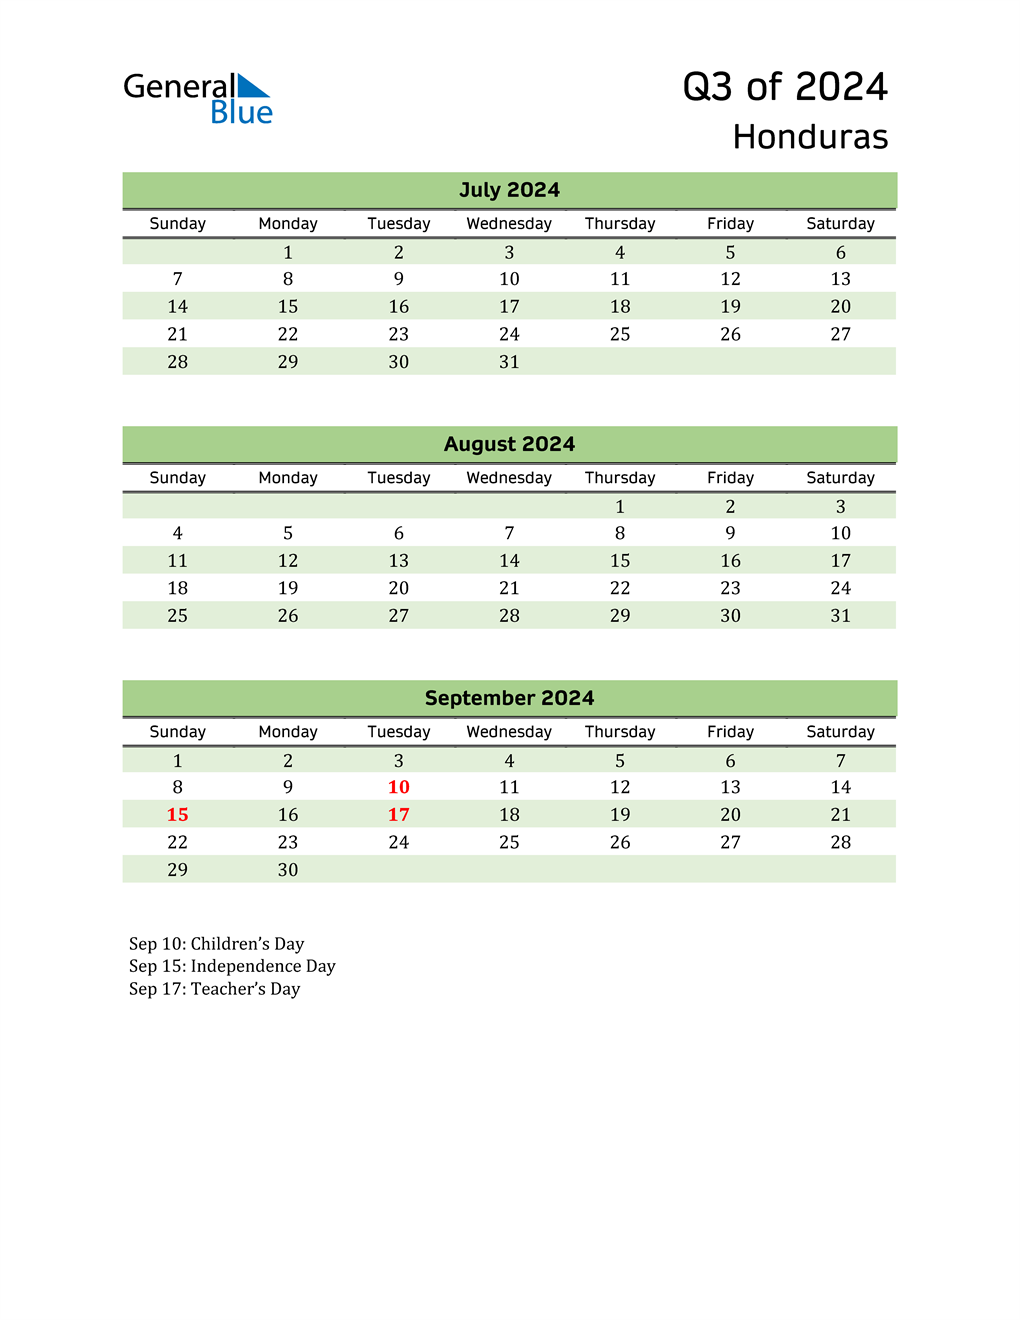  Quarterly Calendar 2024 with Honduras Holidays 